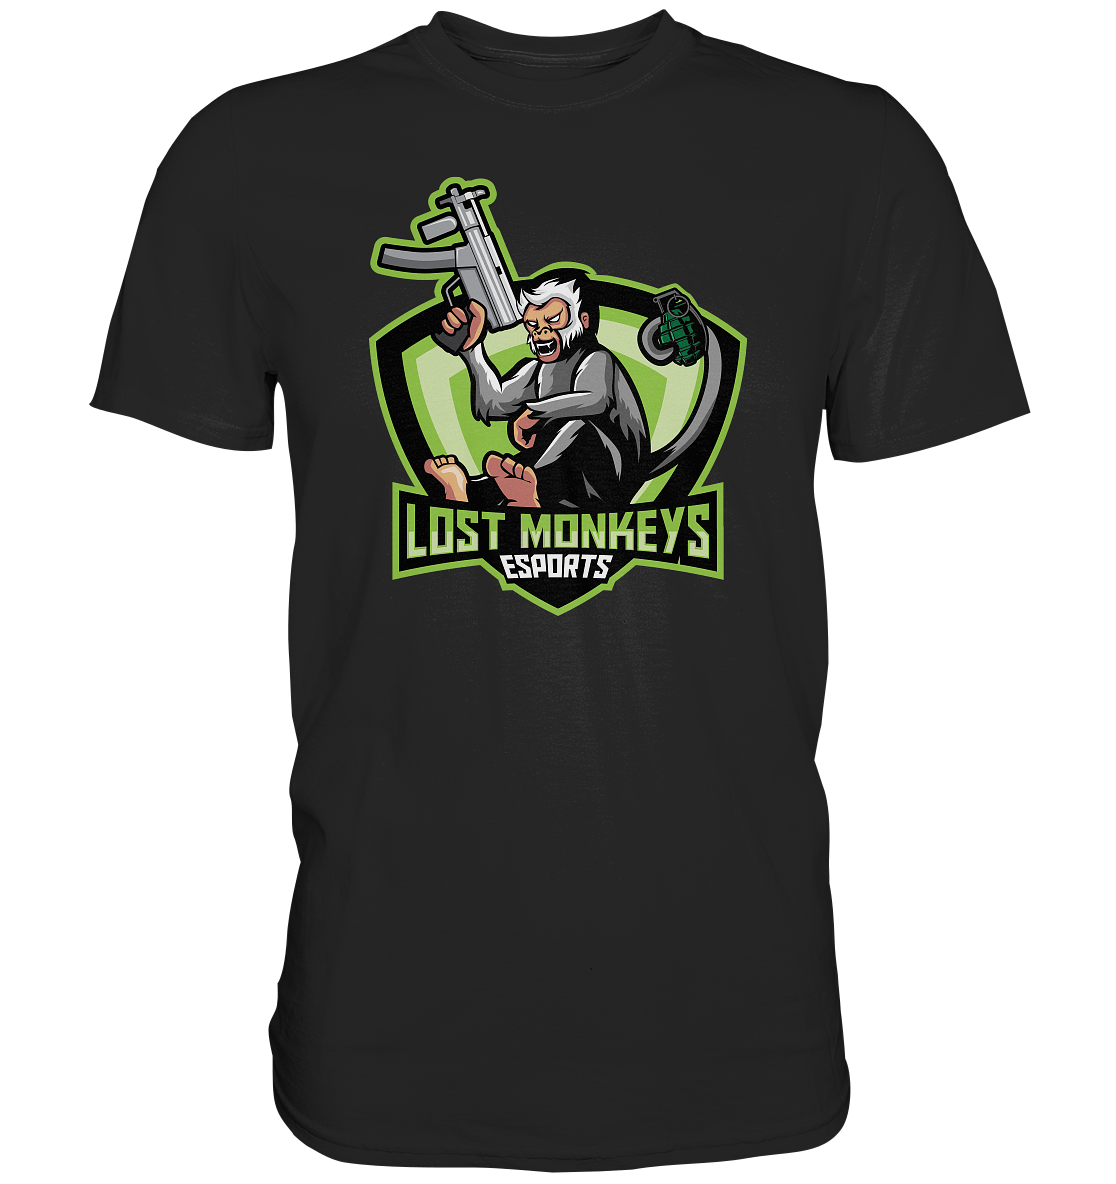 LOST MONKEYS ESPORTS - Basic Shirt